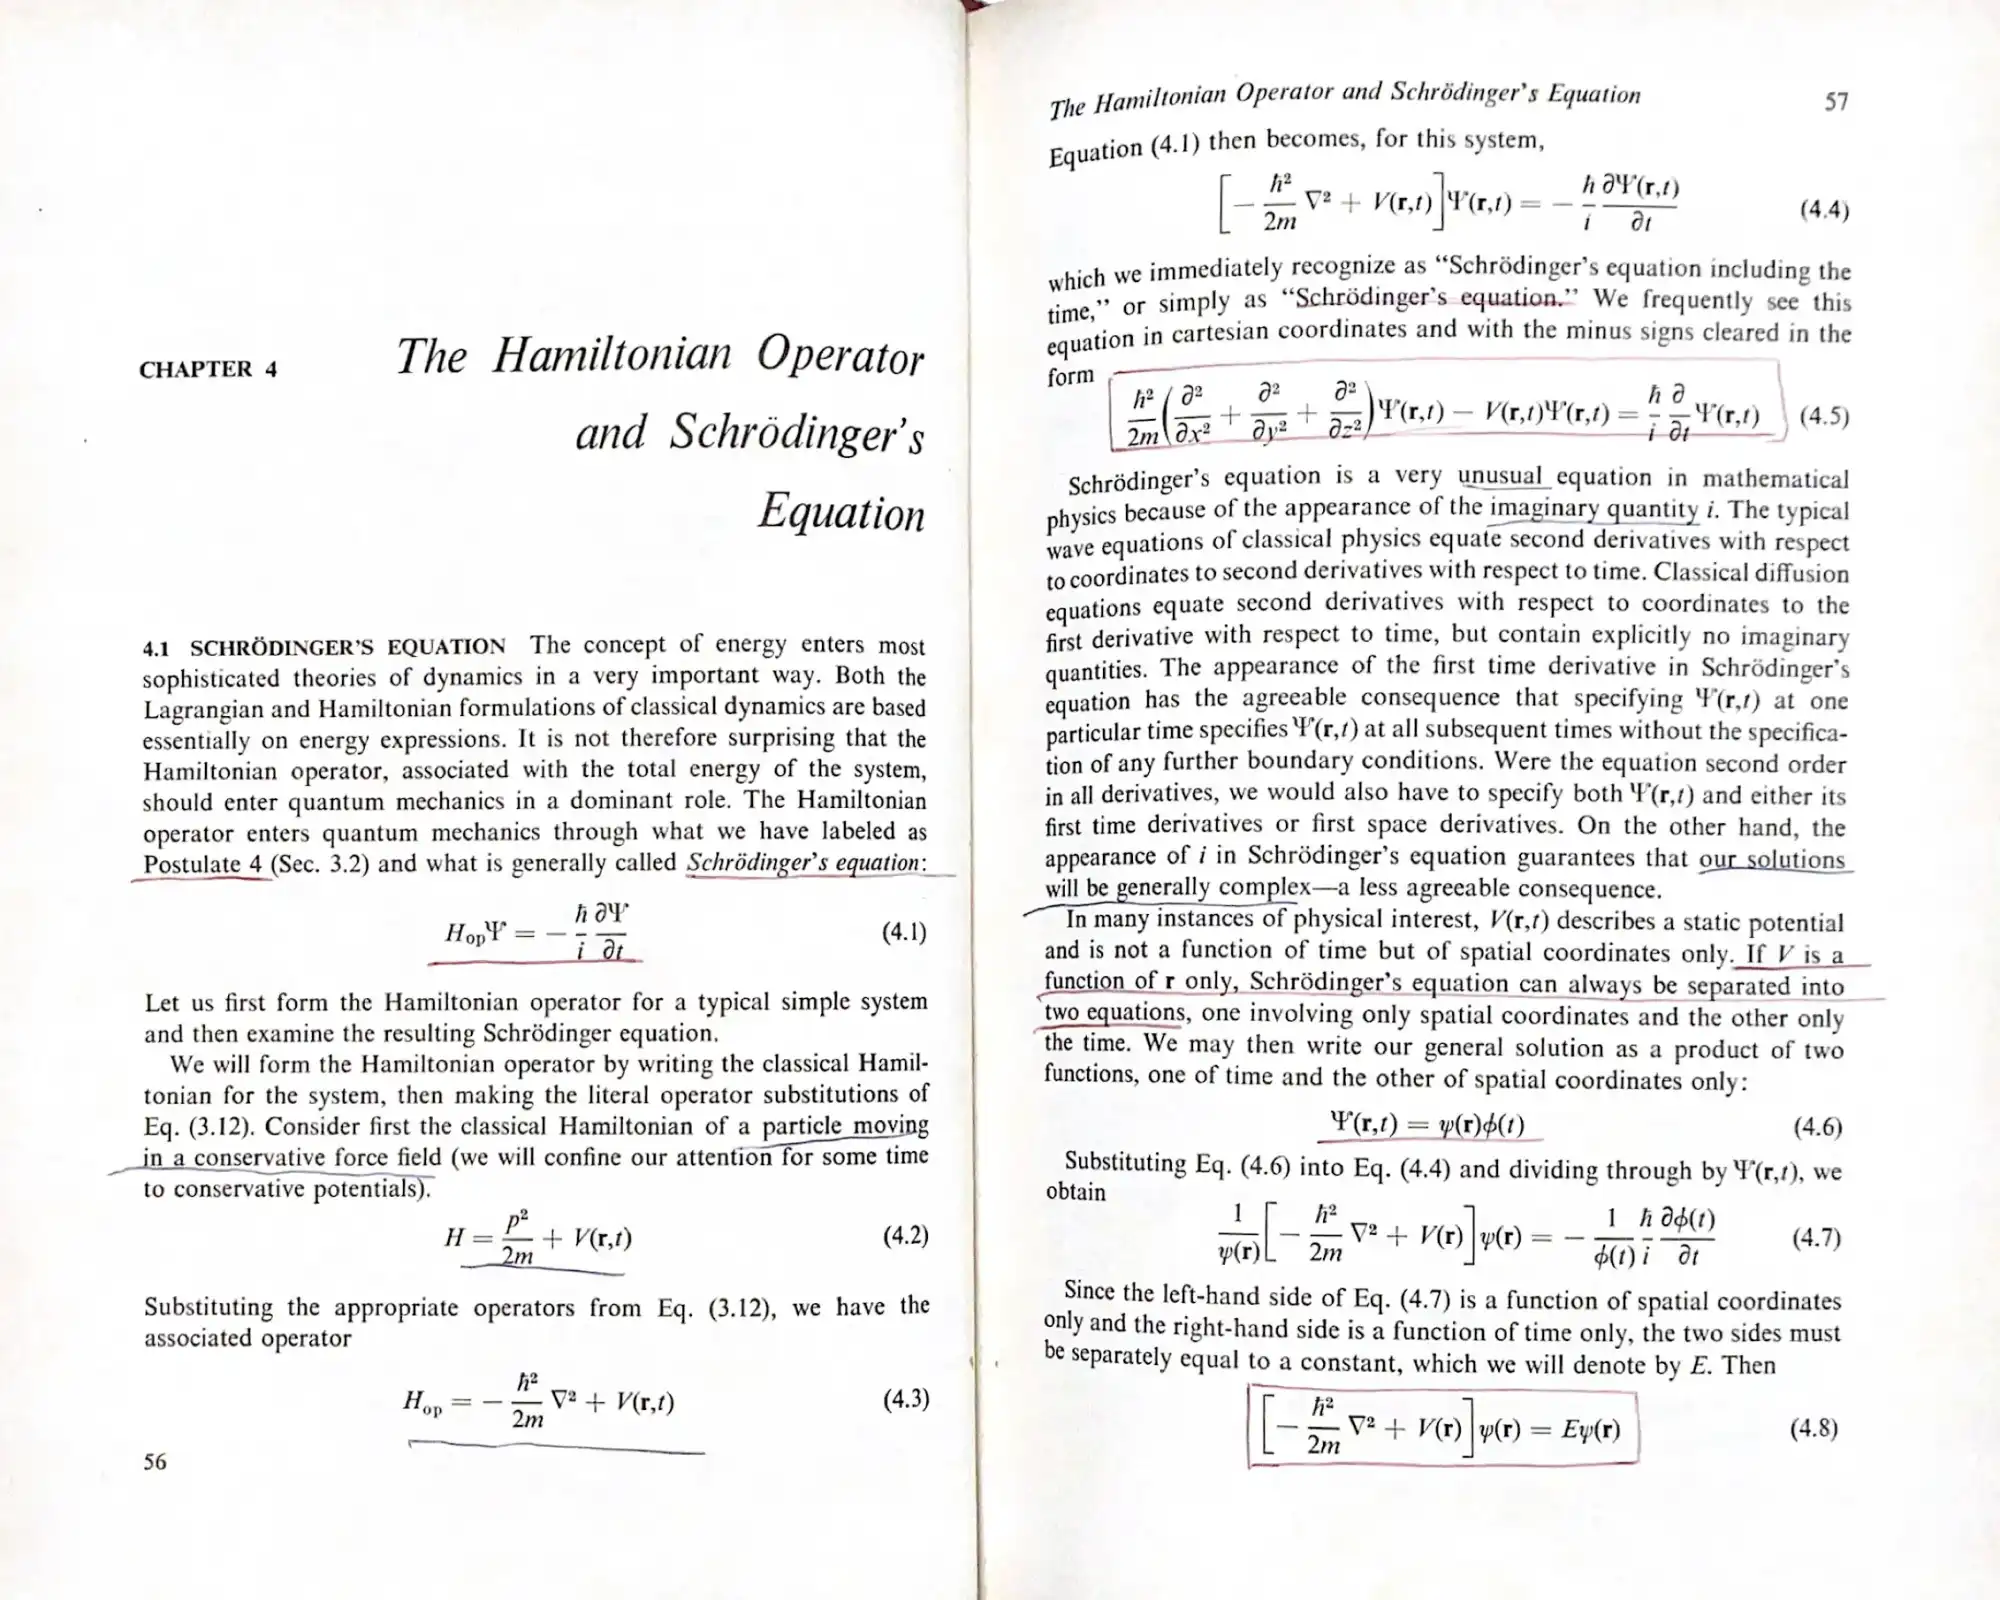 這是「量子力學(Quantum Mechanics)」課本。